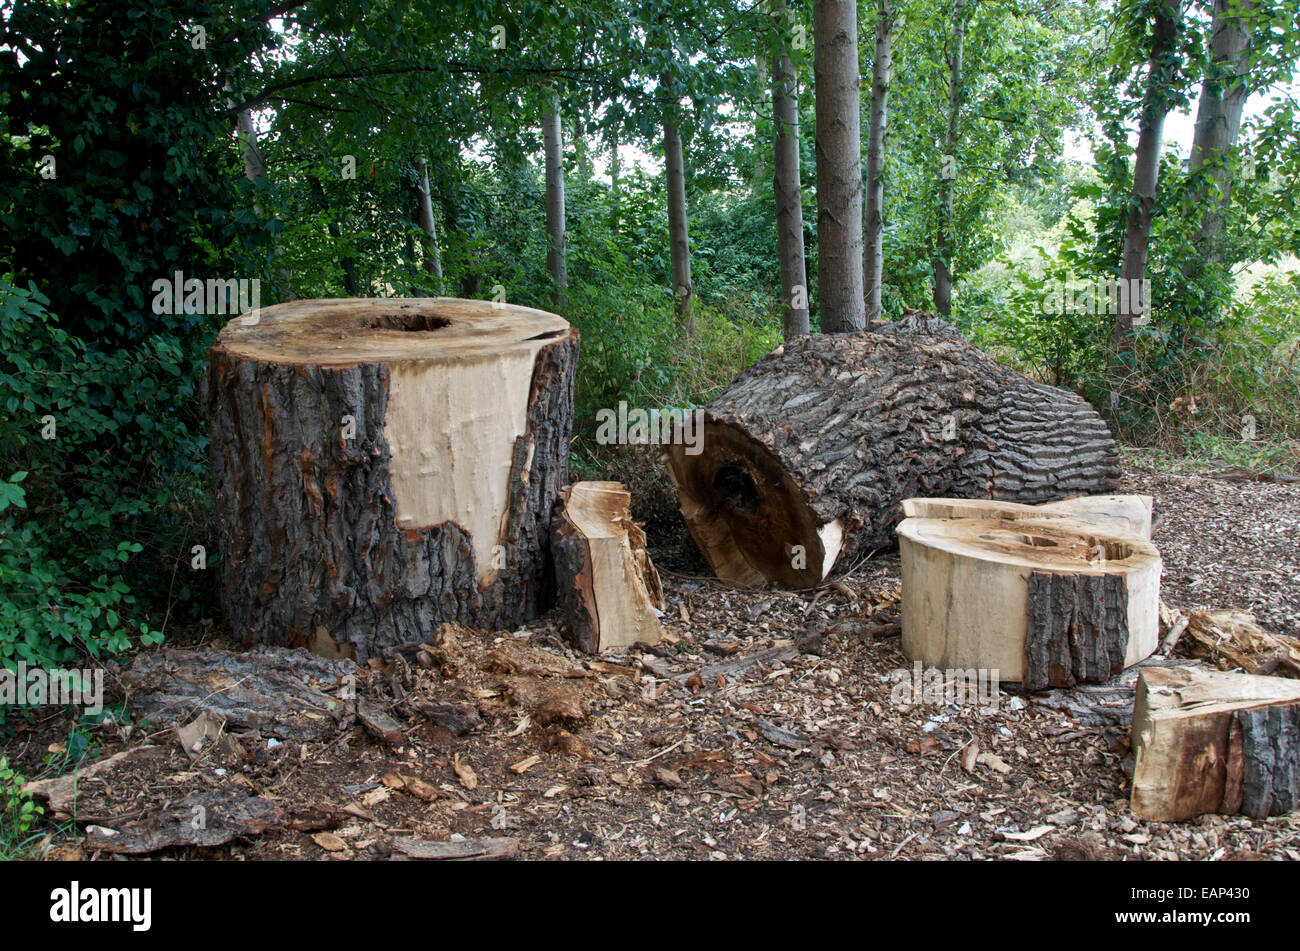 Un tronco de árbol talado cortados en secciones grandes en una zona boscosa Foto de stock